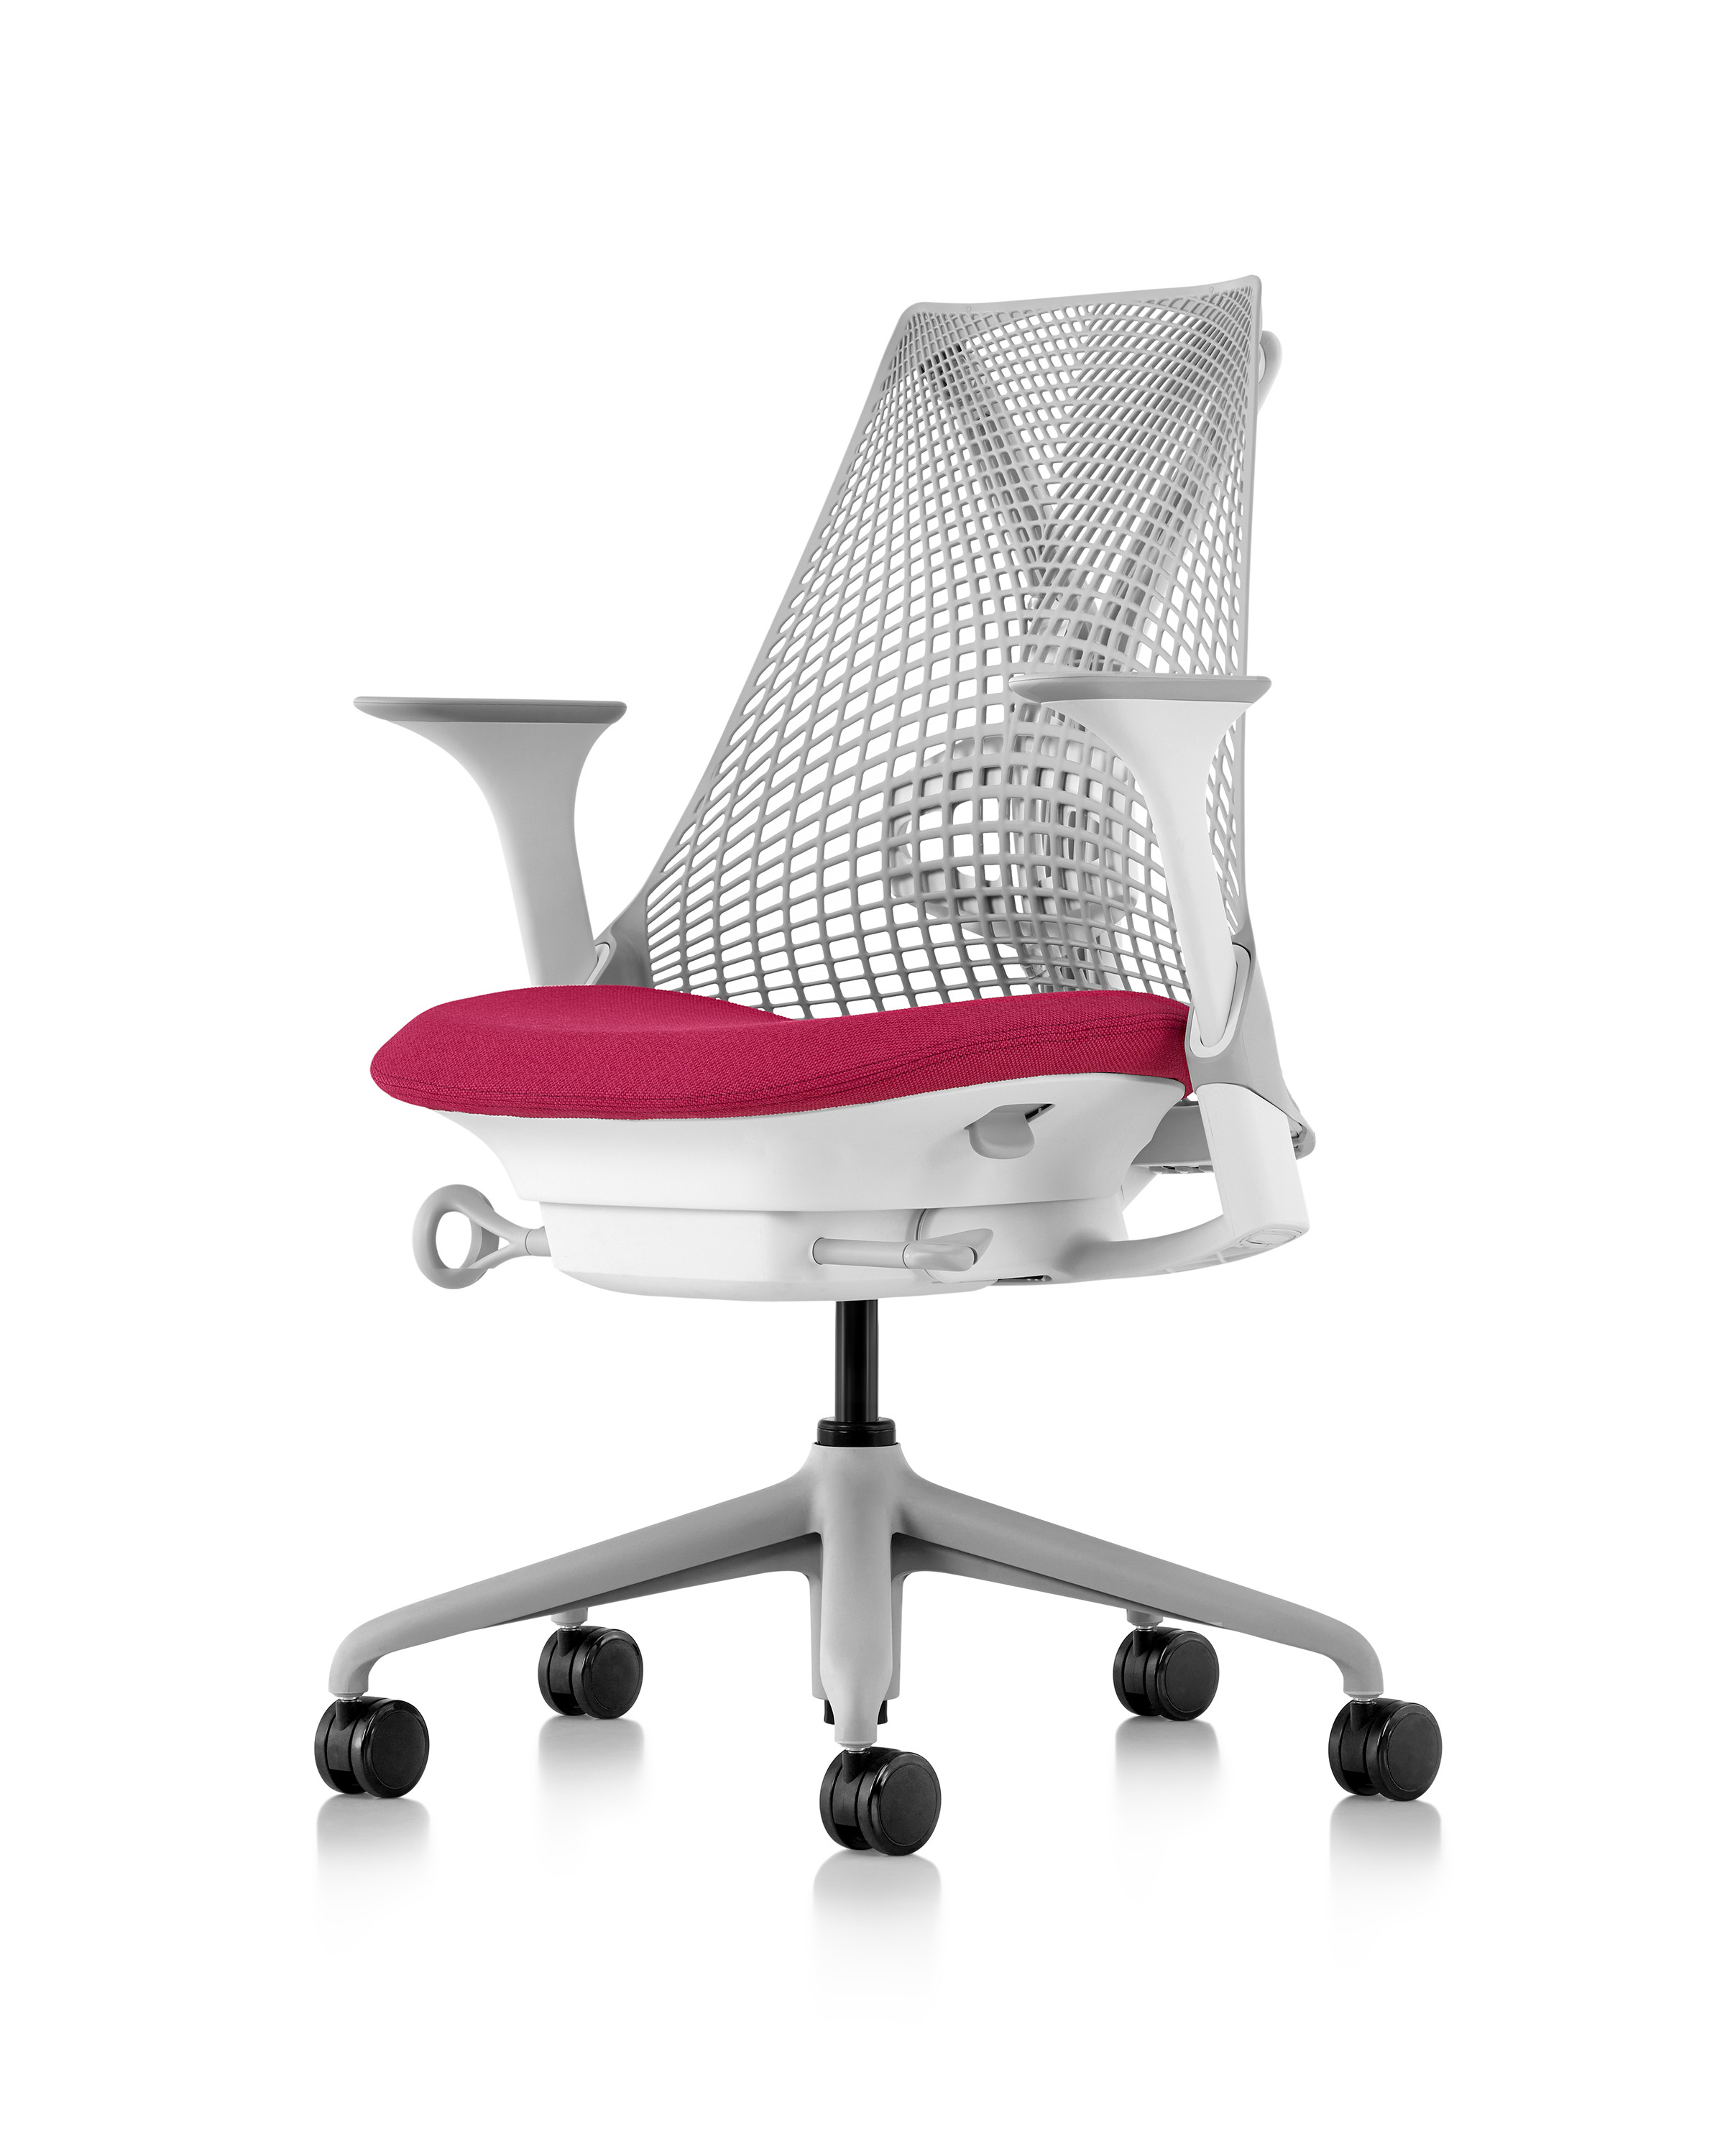 Sayl Chair by Herman Miller || Suporte & Inovação Interiores, representante Atec Original Design - Maior Dealer Herman Miller da América Latina